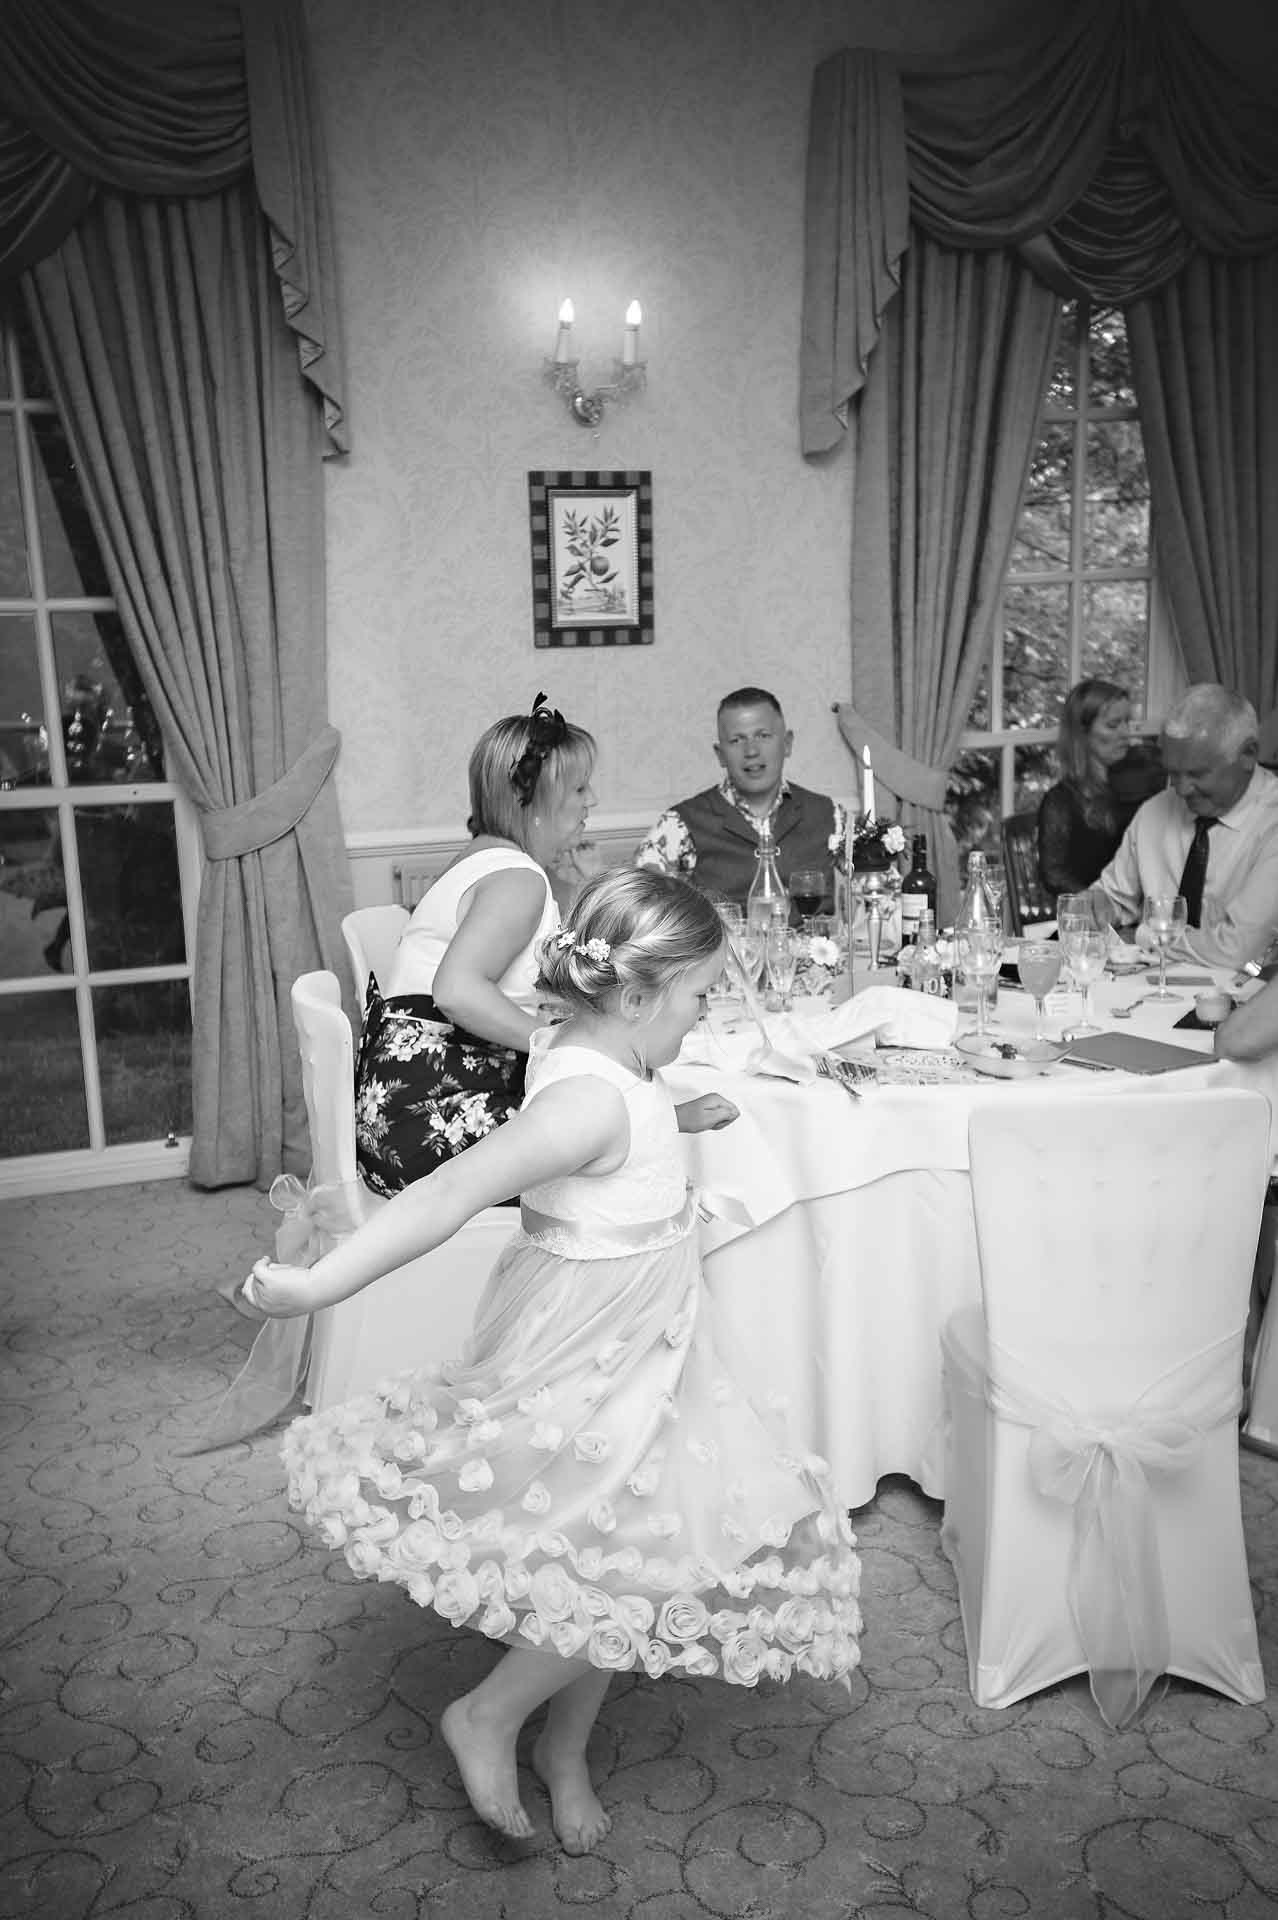 Bridesmaid dancing at wedding meal